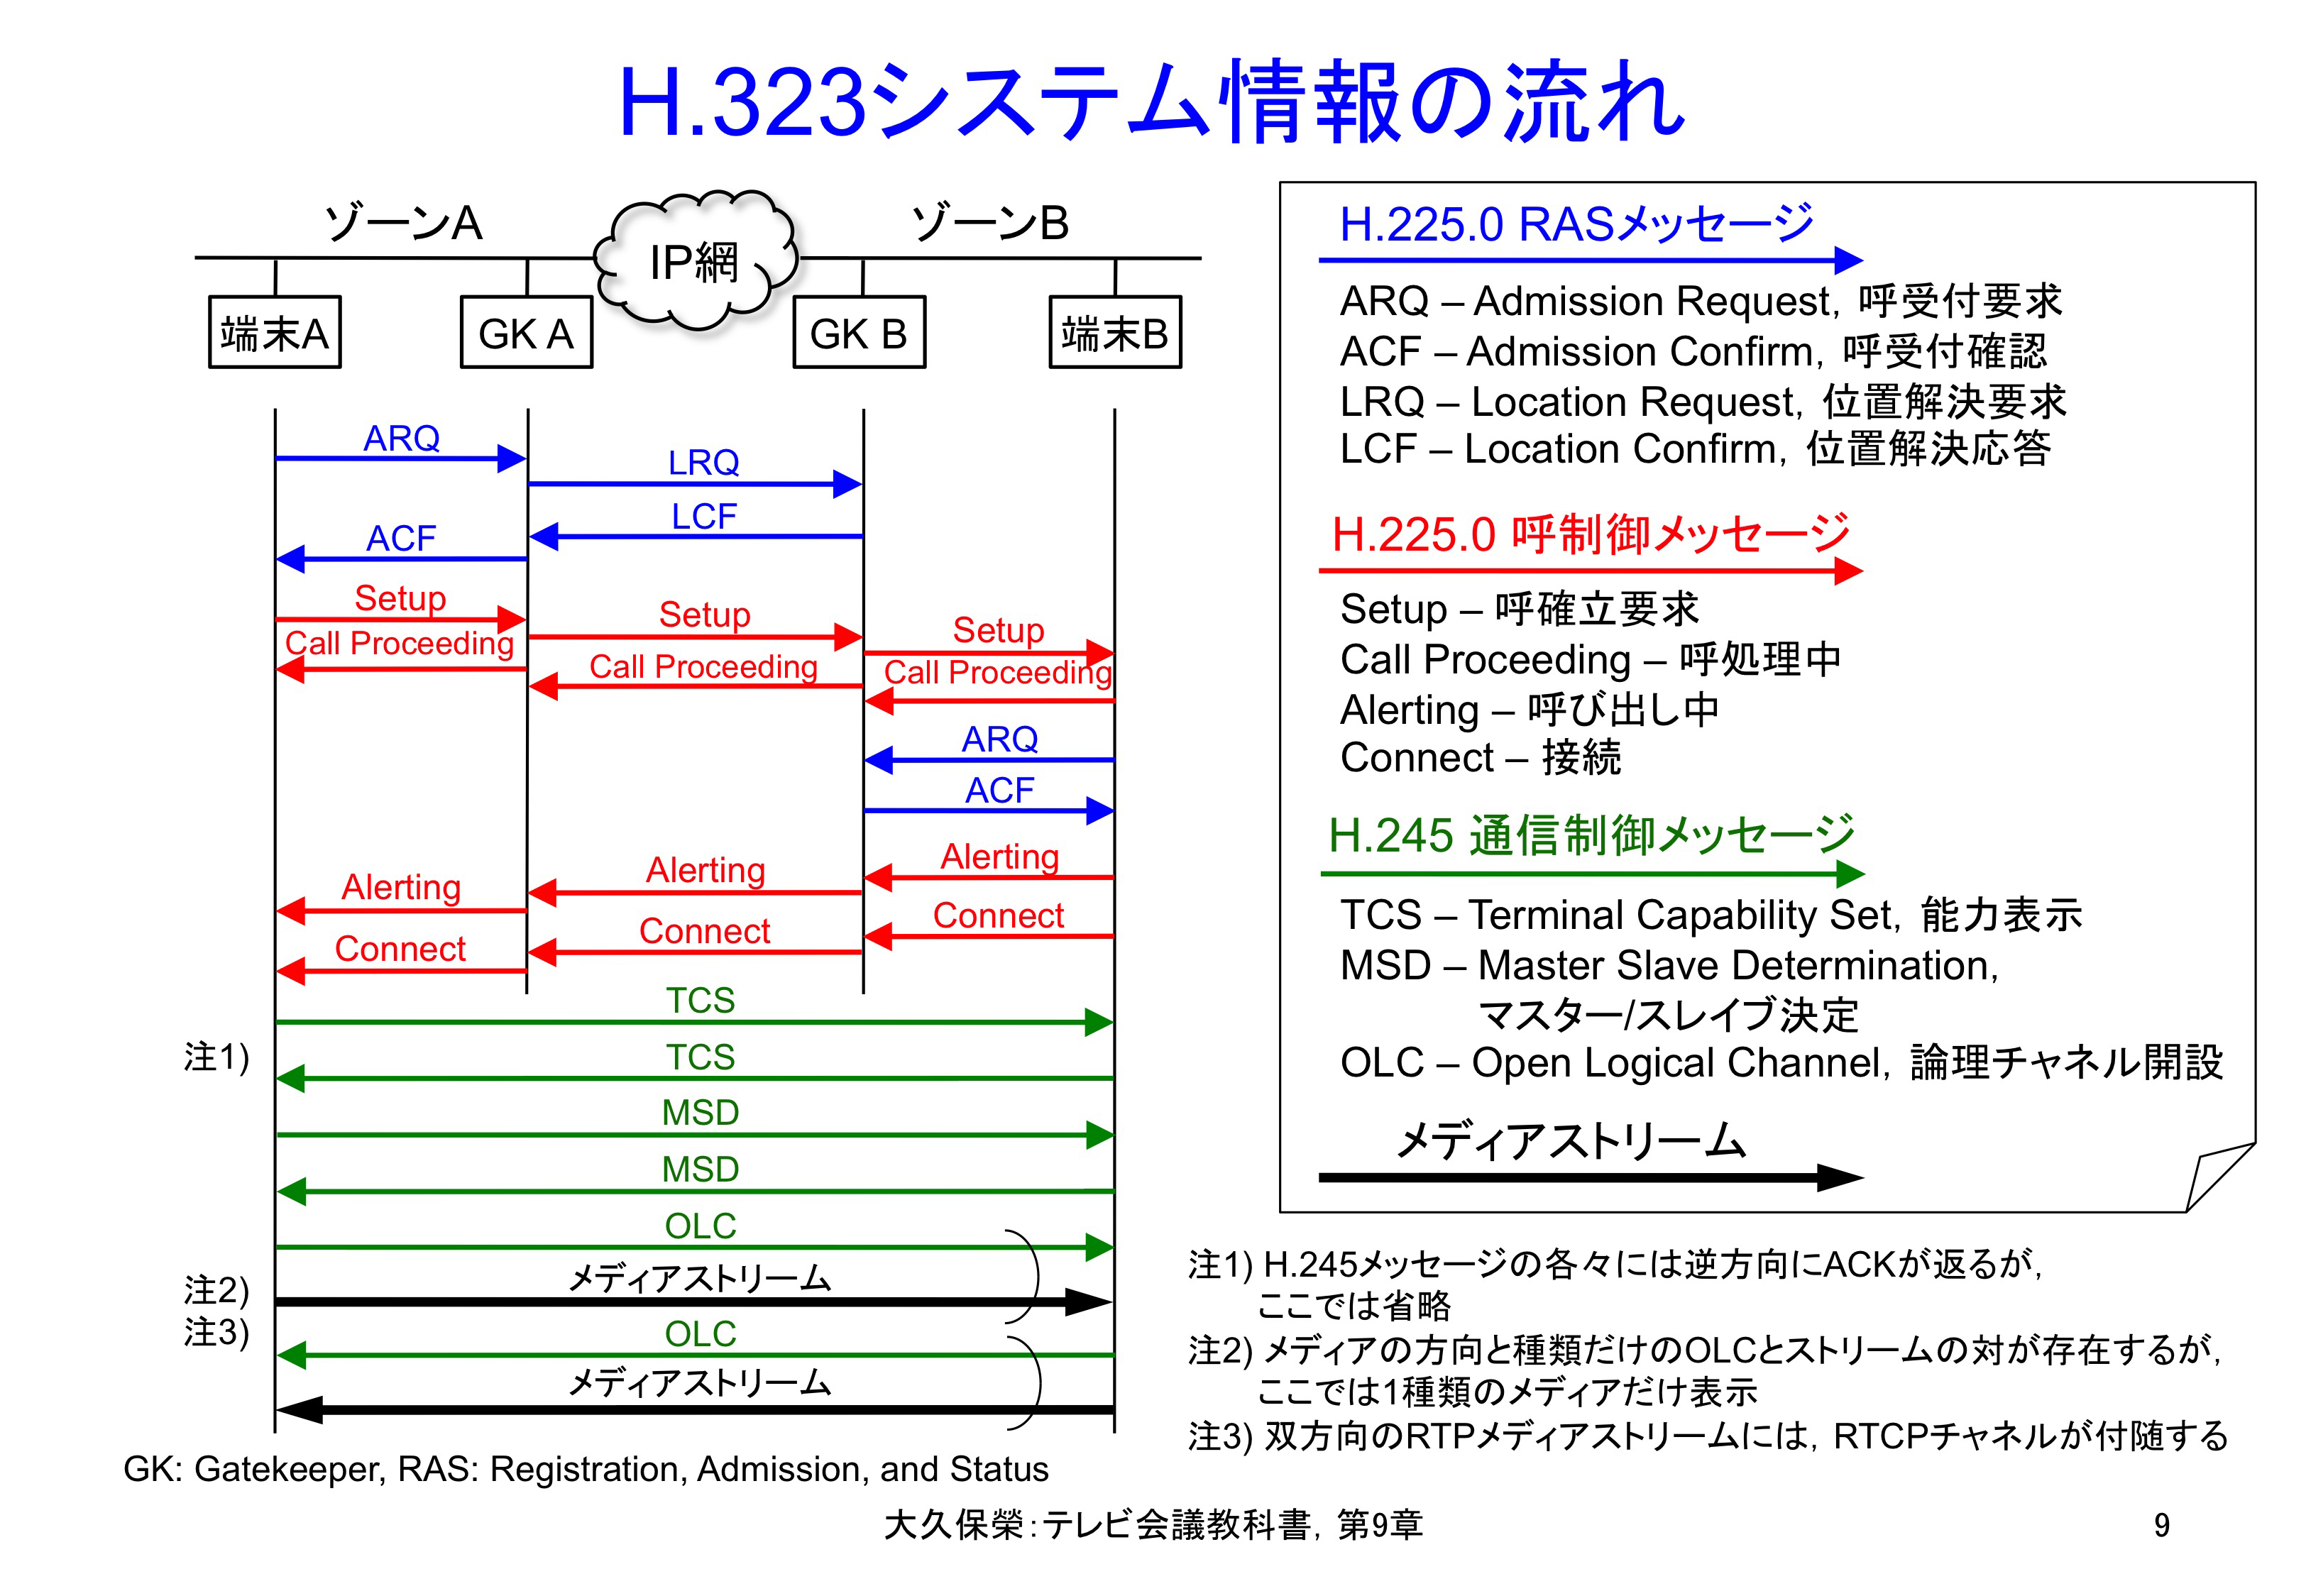 図9-9 H.323システム情報の流れ